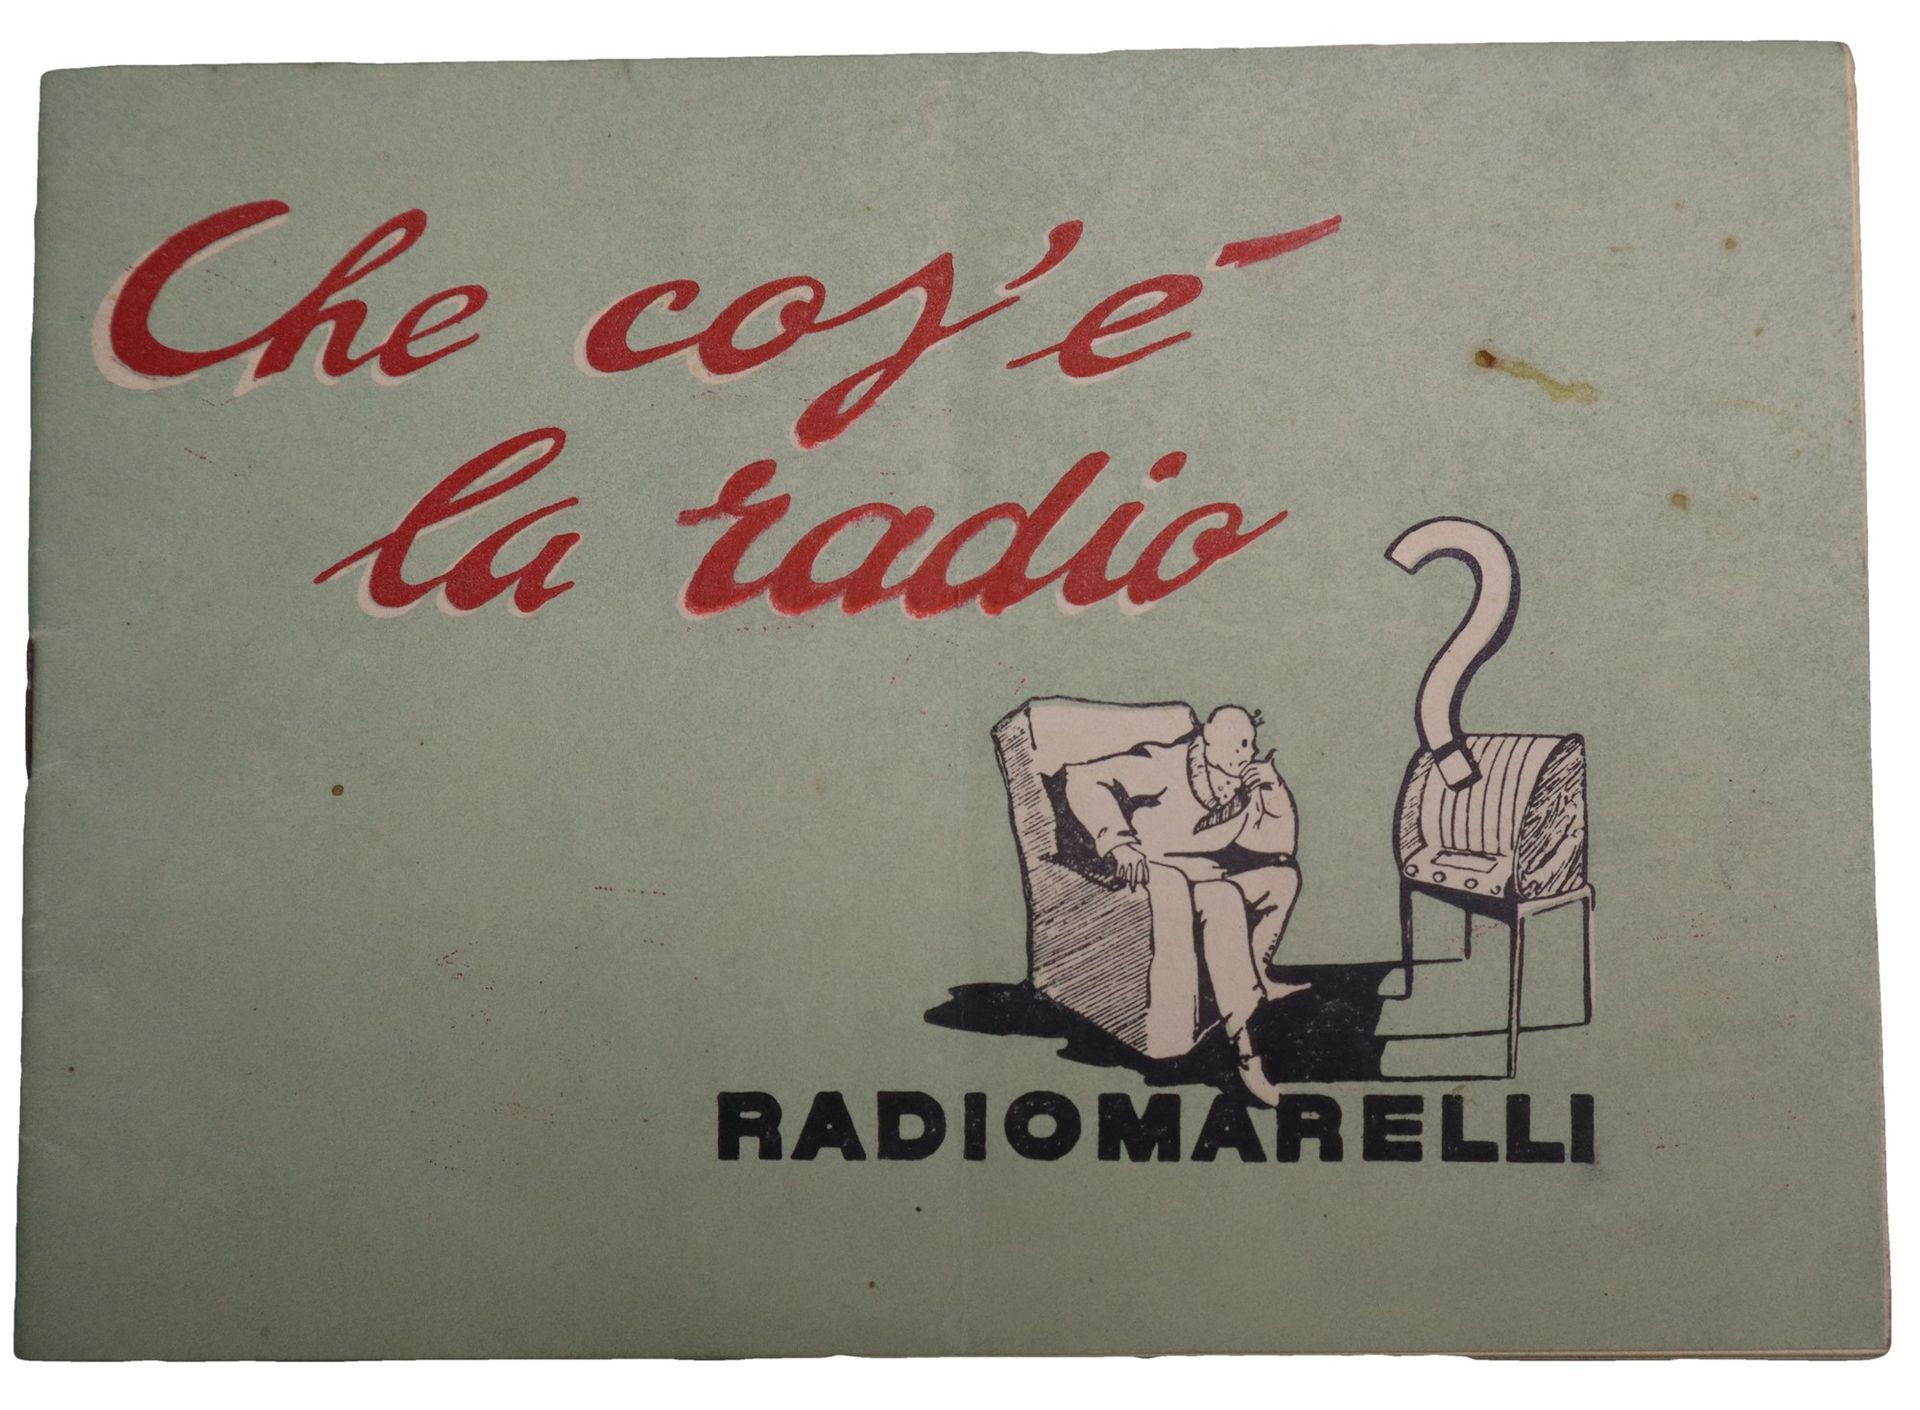 Magneti Marelli Qu'est-ce que la radio ? Radiomarelli